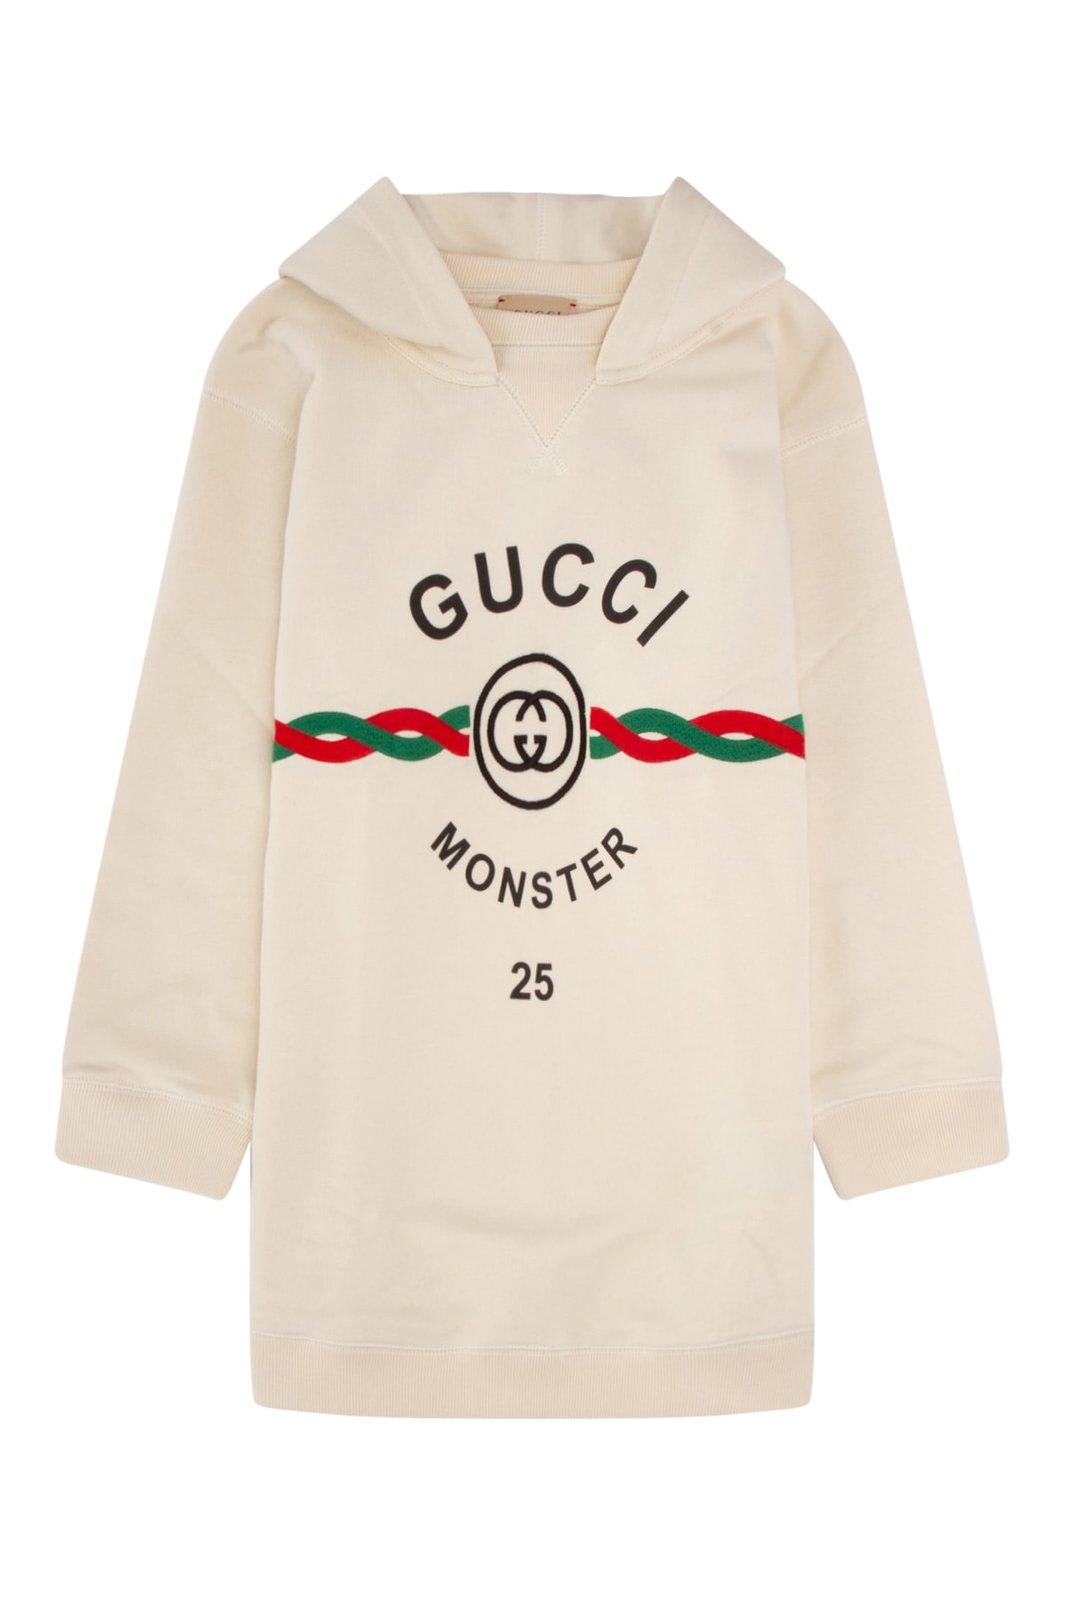 Gucci Logo Printed Long-sleeved Hoodie